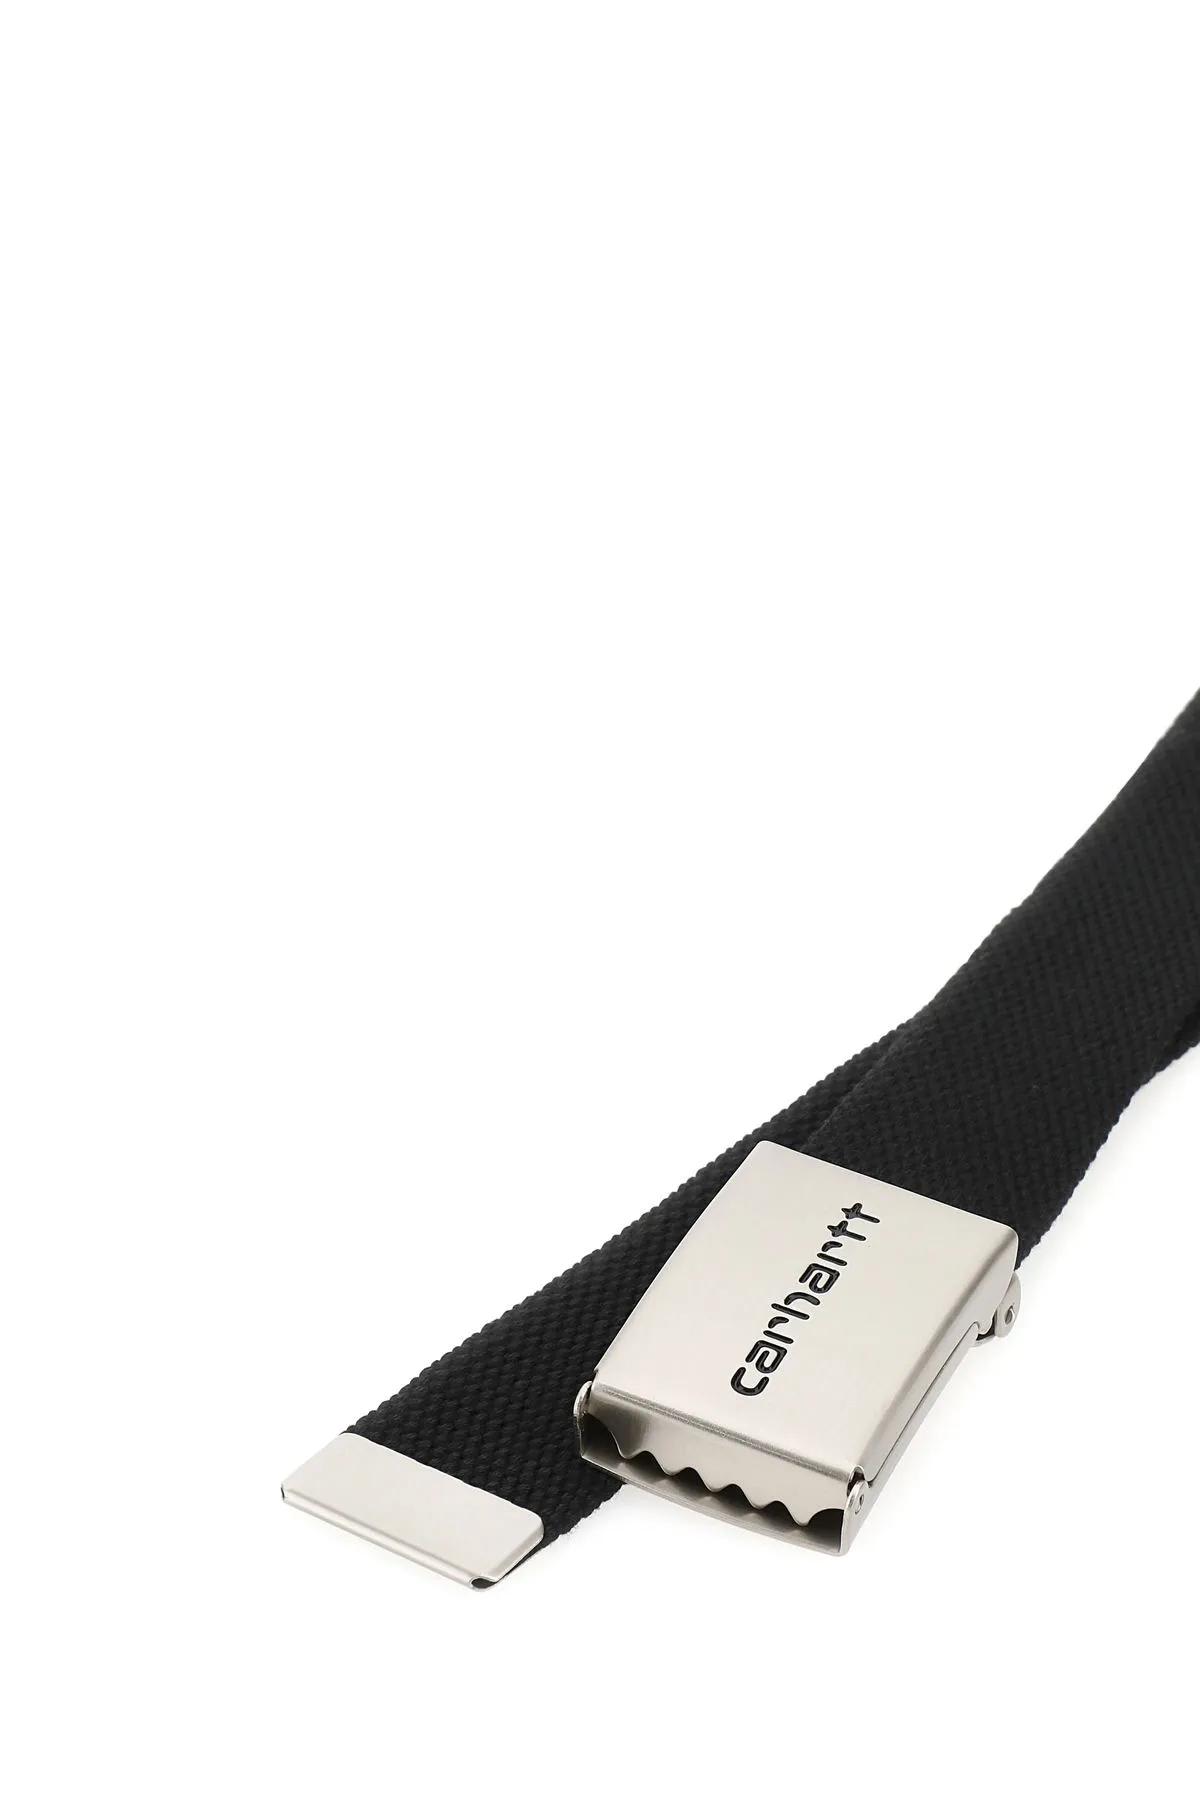 Shop Carhartt Black Fabric Clip Belt Chrome In Nero